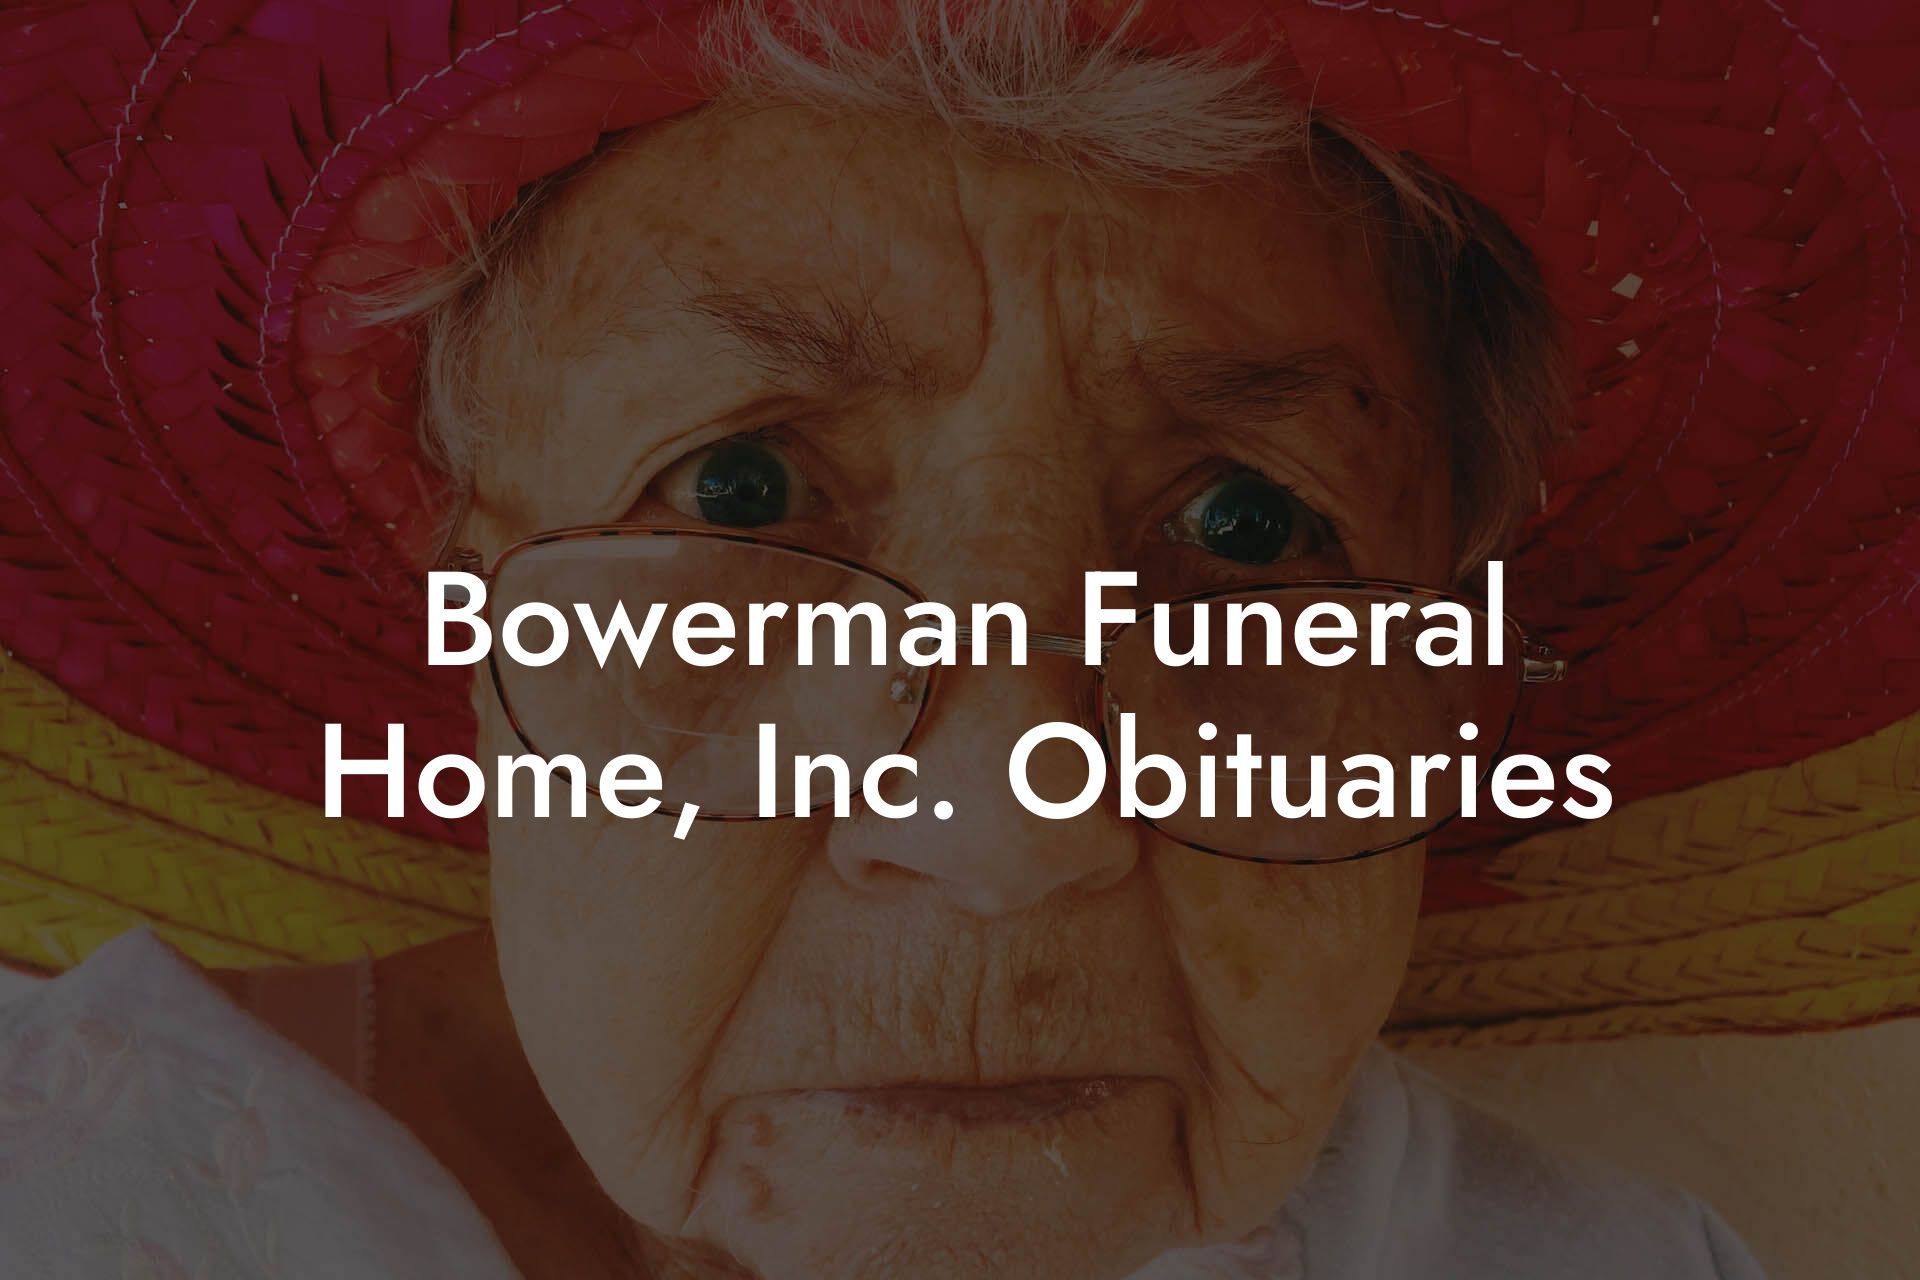 Bowerman Funeral Home, Inc. Obituaries